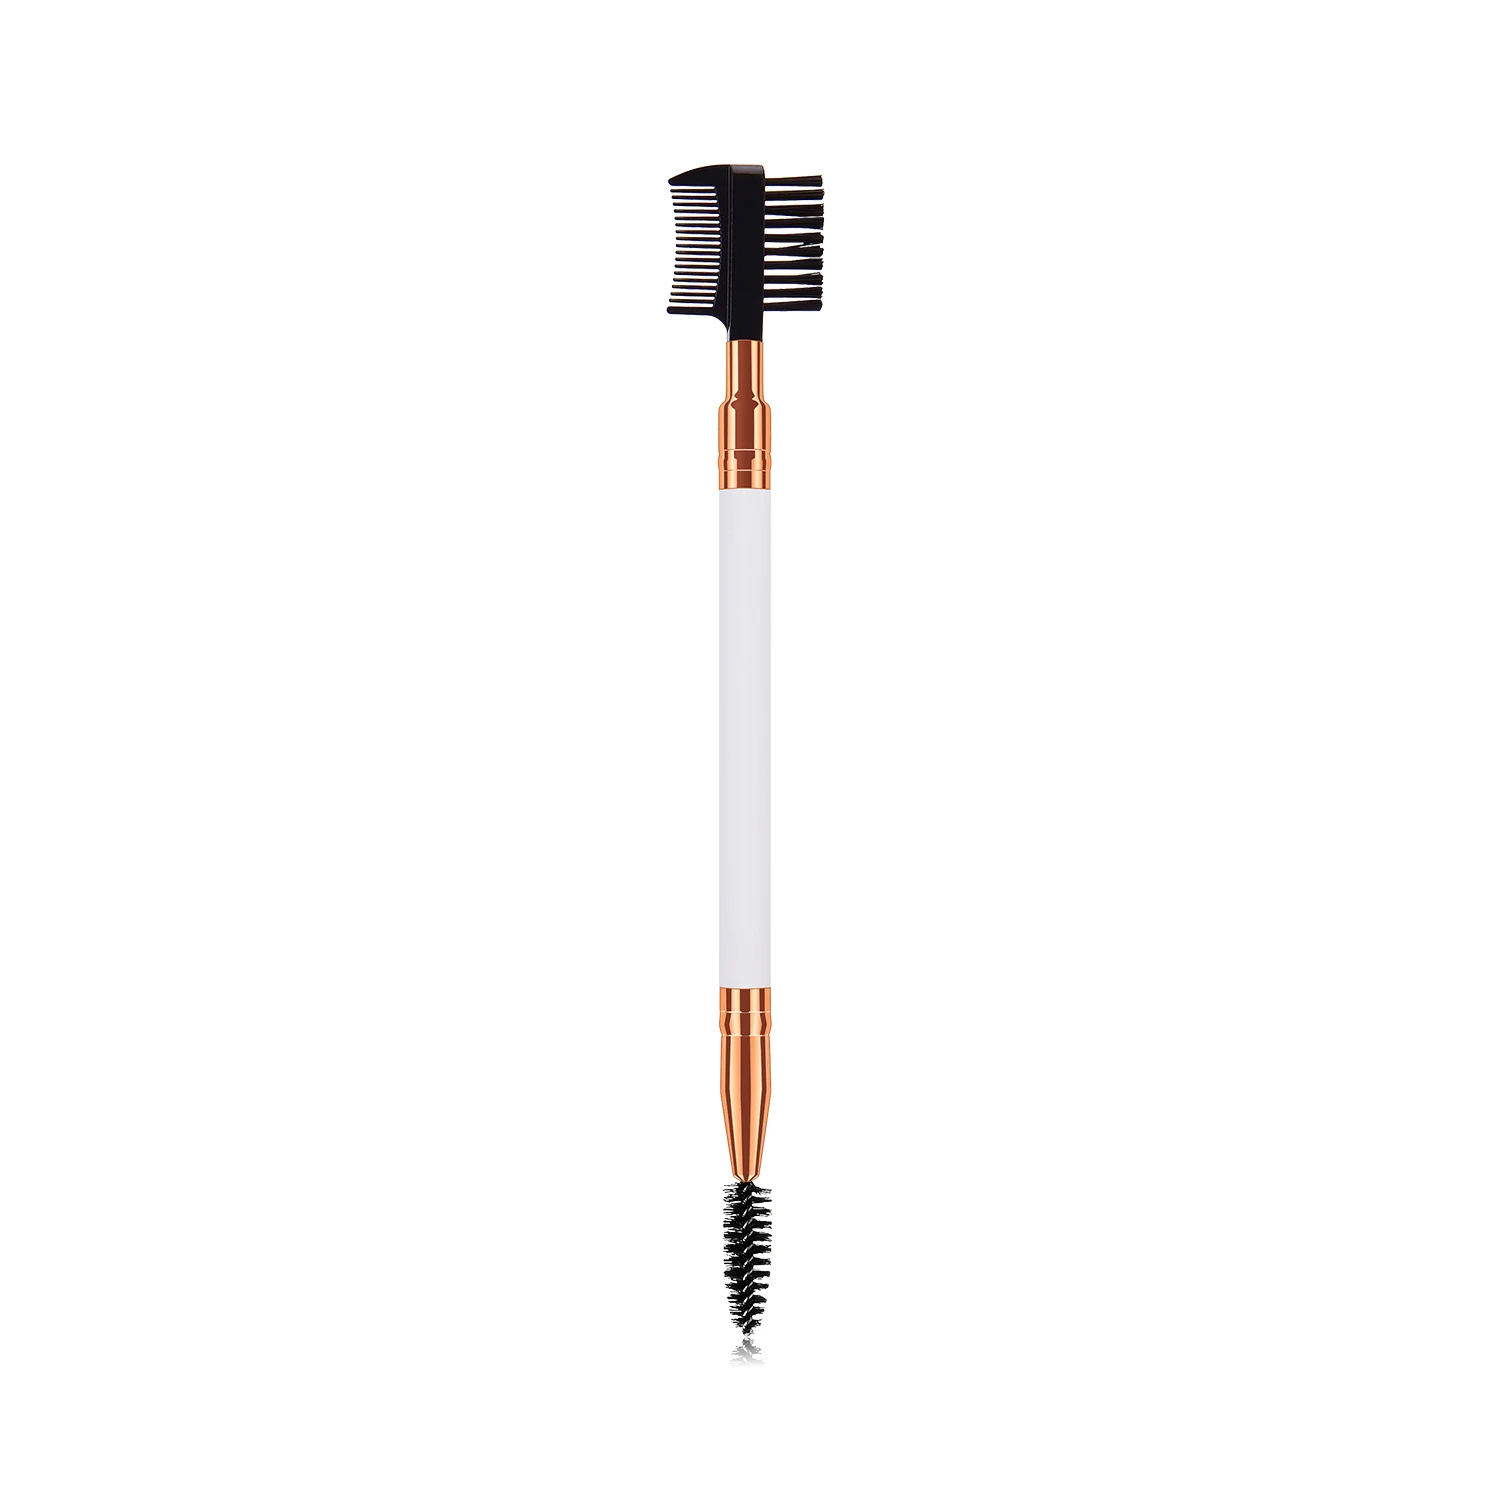 Двухсторонняя кисть для бровей с деревянной ручкой, профессиональная косметическая расческа для бровей, косметический инструмент, косметические кисти - Handle Color: as the picture